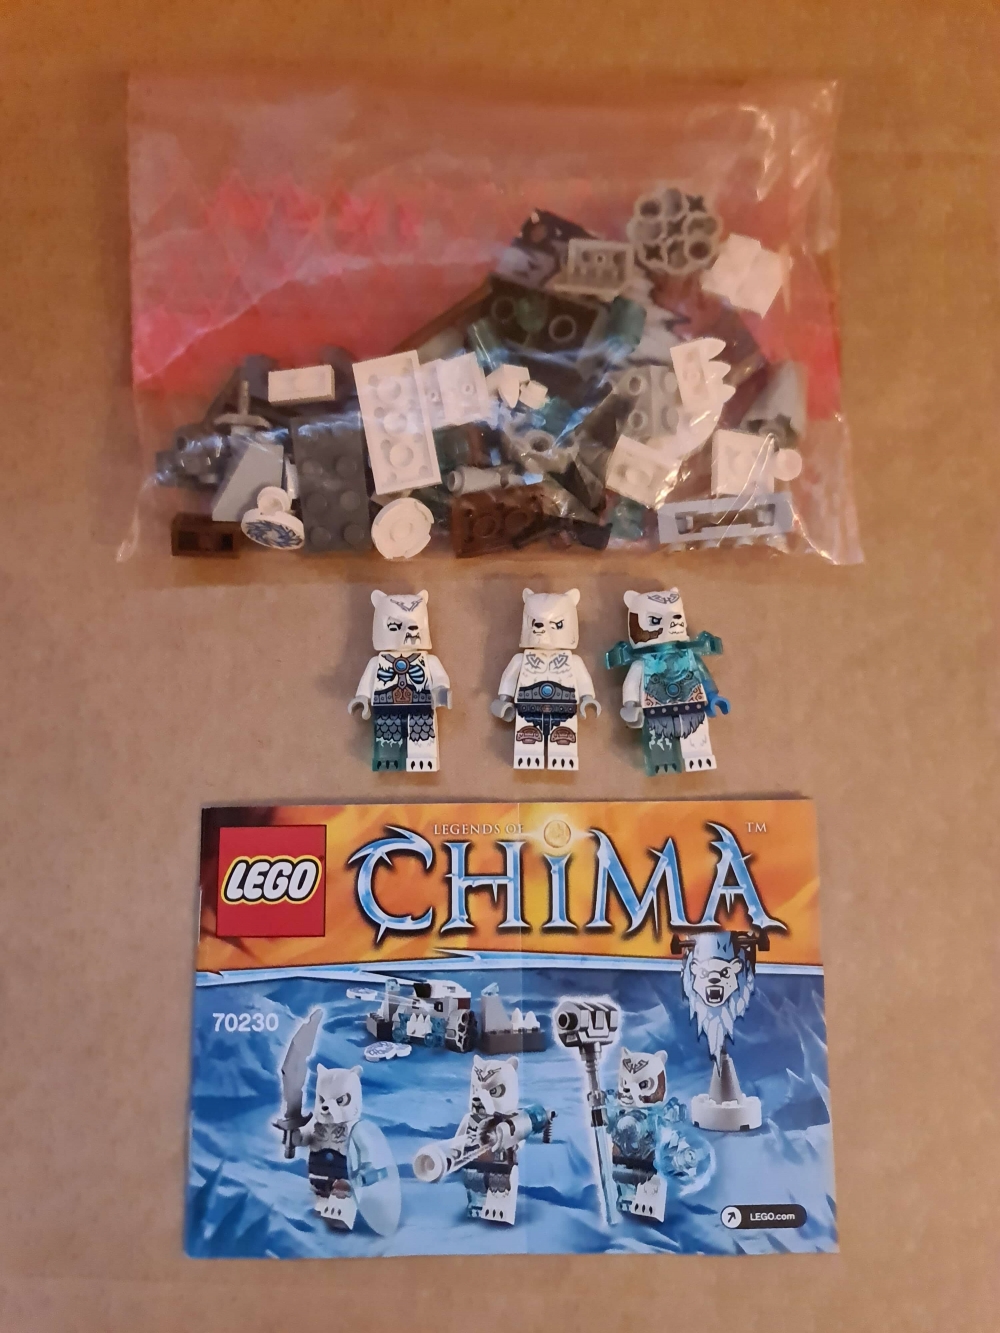 Sett 70230 fra Lego Chima serien. 

Meget pent. Komplett med manual. 